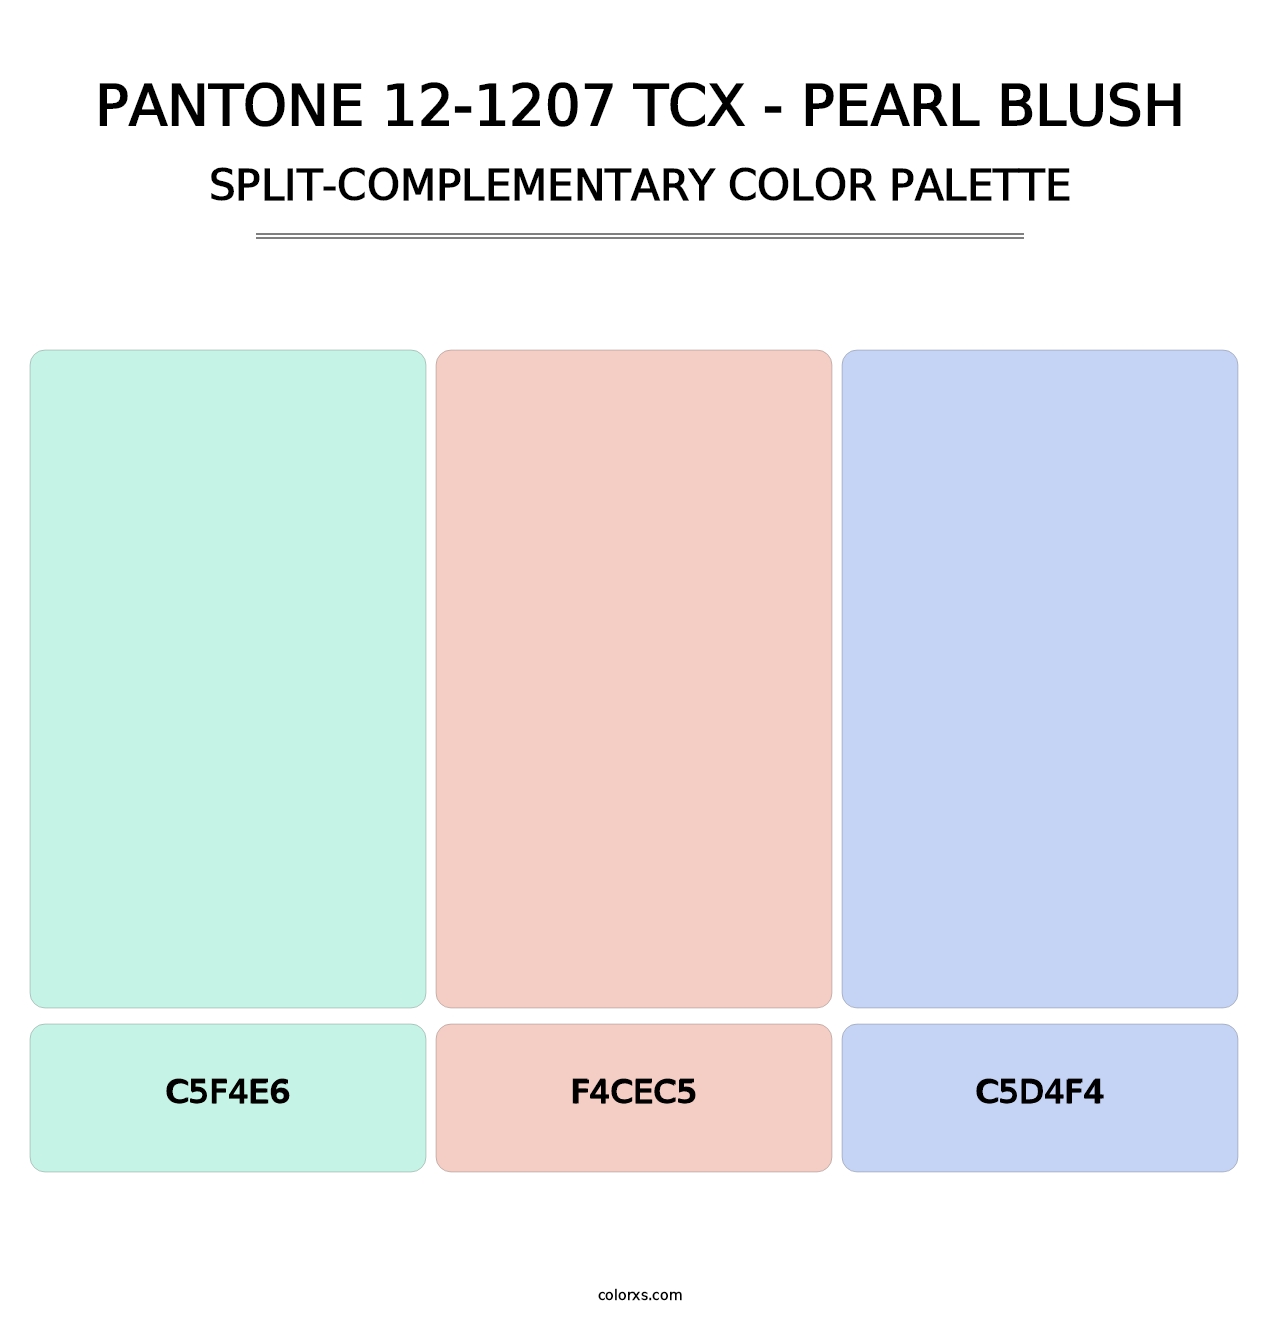 PANTONE 12-1207 TCX - Pearl Blush - Split-Complementary Color Palette